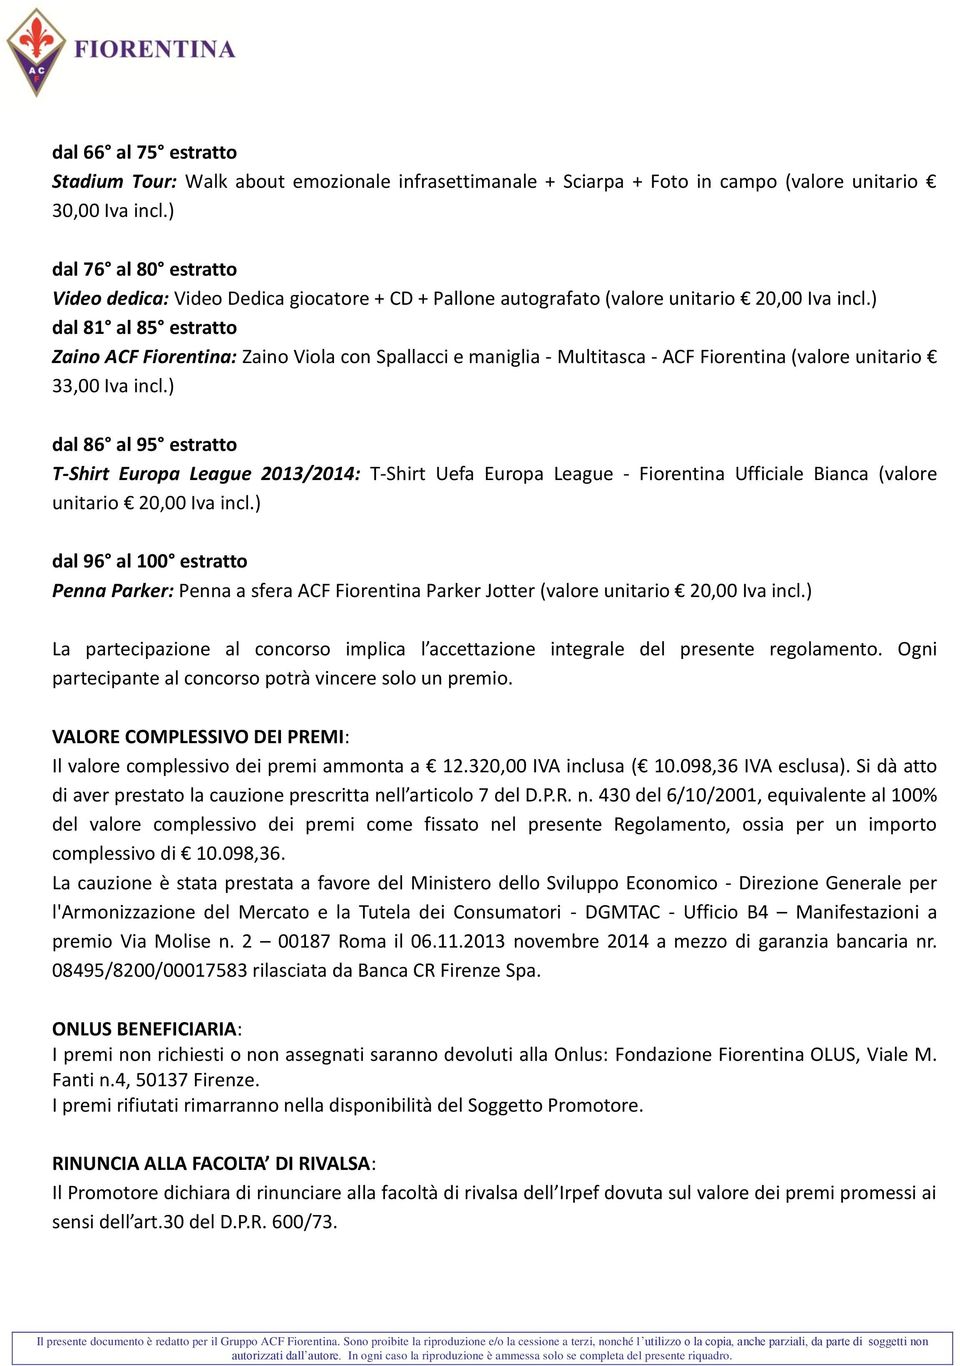 ) dal 81 al 85 estratto Zaino ACF Fiorentina: Zaino Viola con Spallacci e maniglia - Multitasca - ACF Fiorentina (valore unitario 33,00 Iva incl.